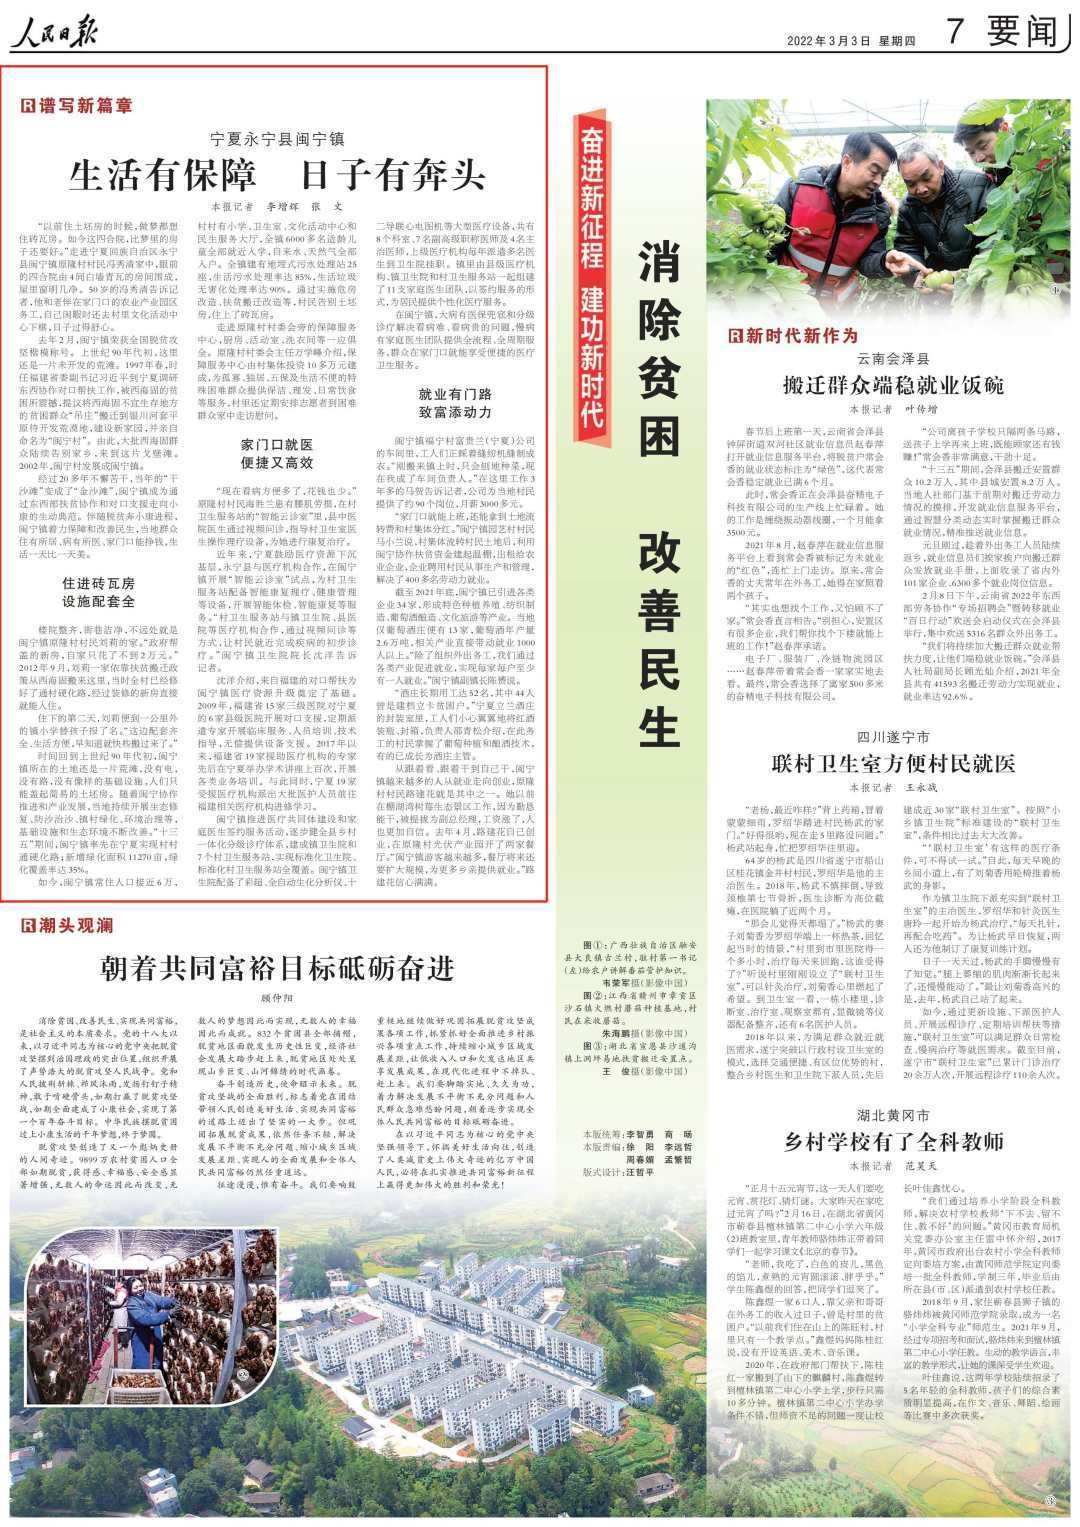 今天,闽宁镇成为人民日报要闻版头条